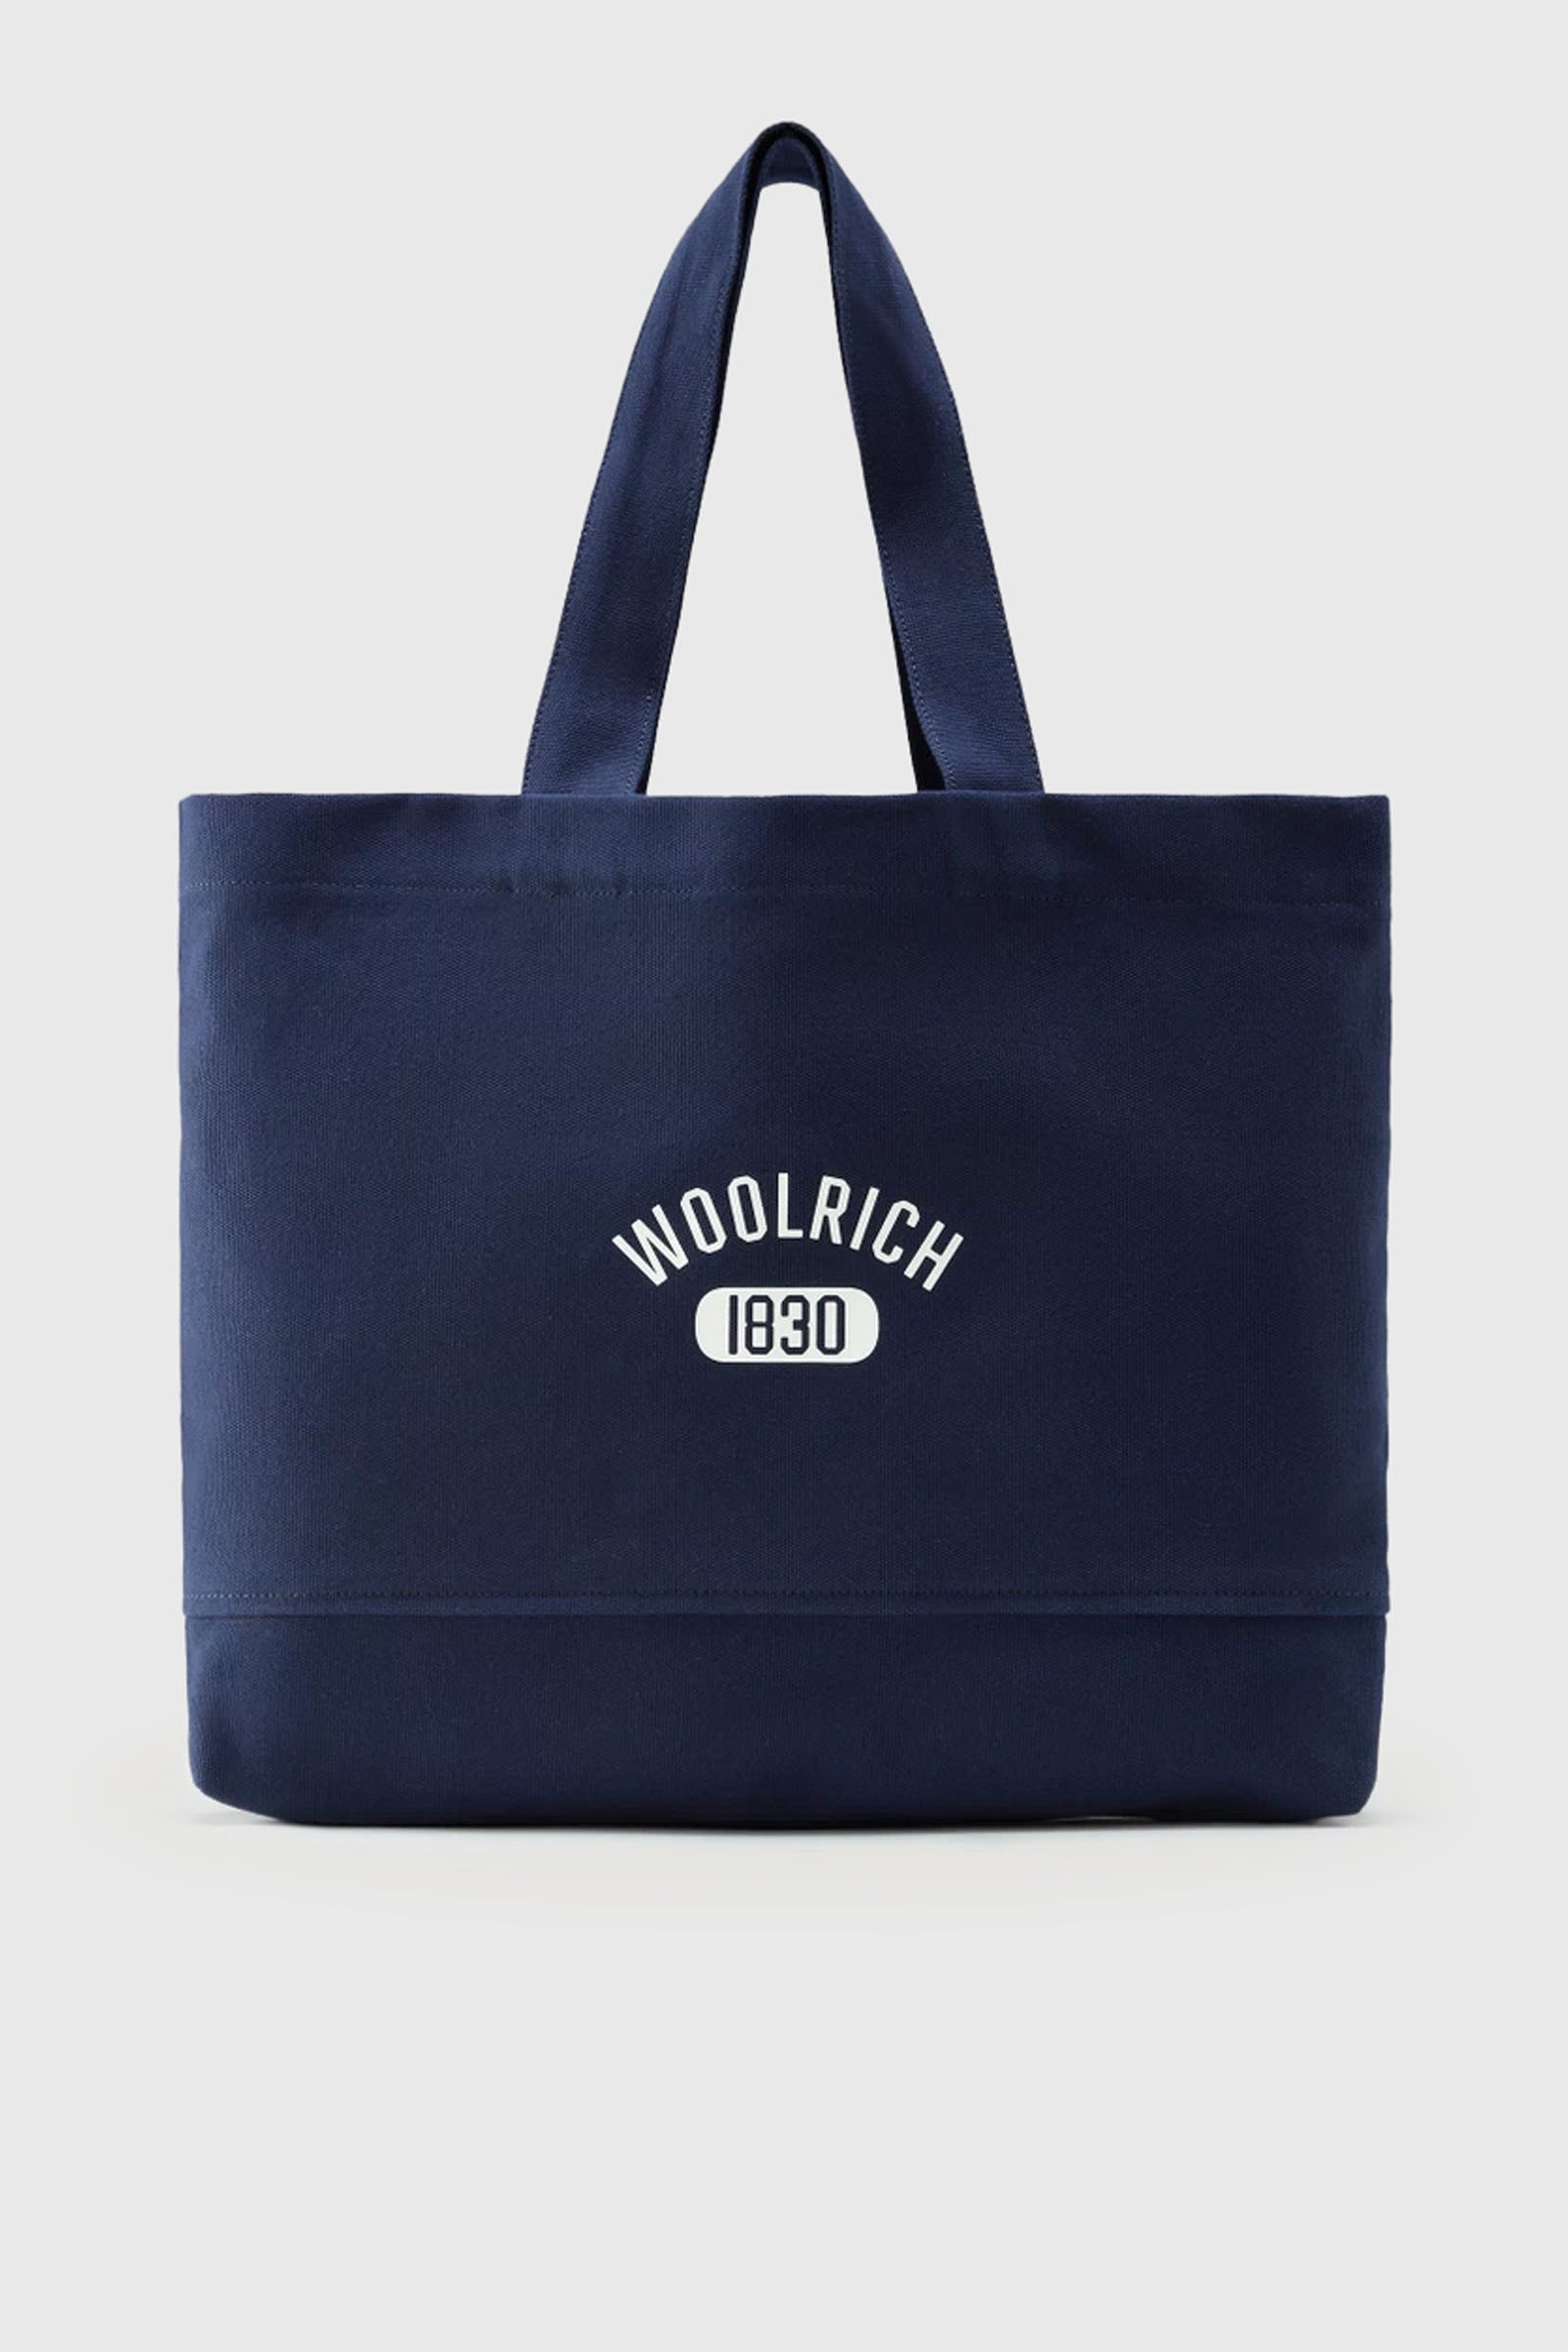 Woolrich Tote Bag CFWOBA0050MRUT3733389 Cotton Blue - 1